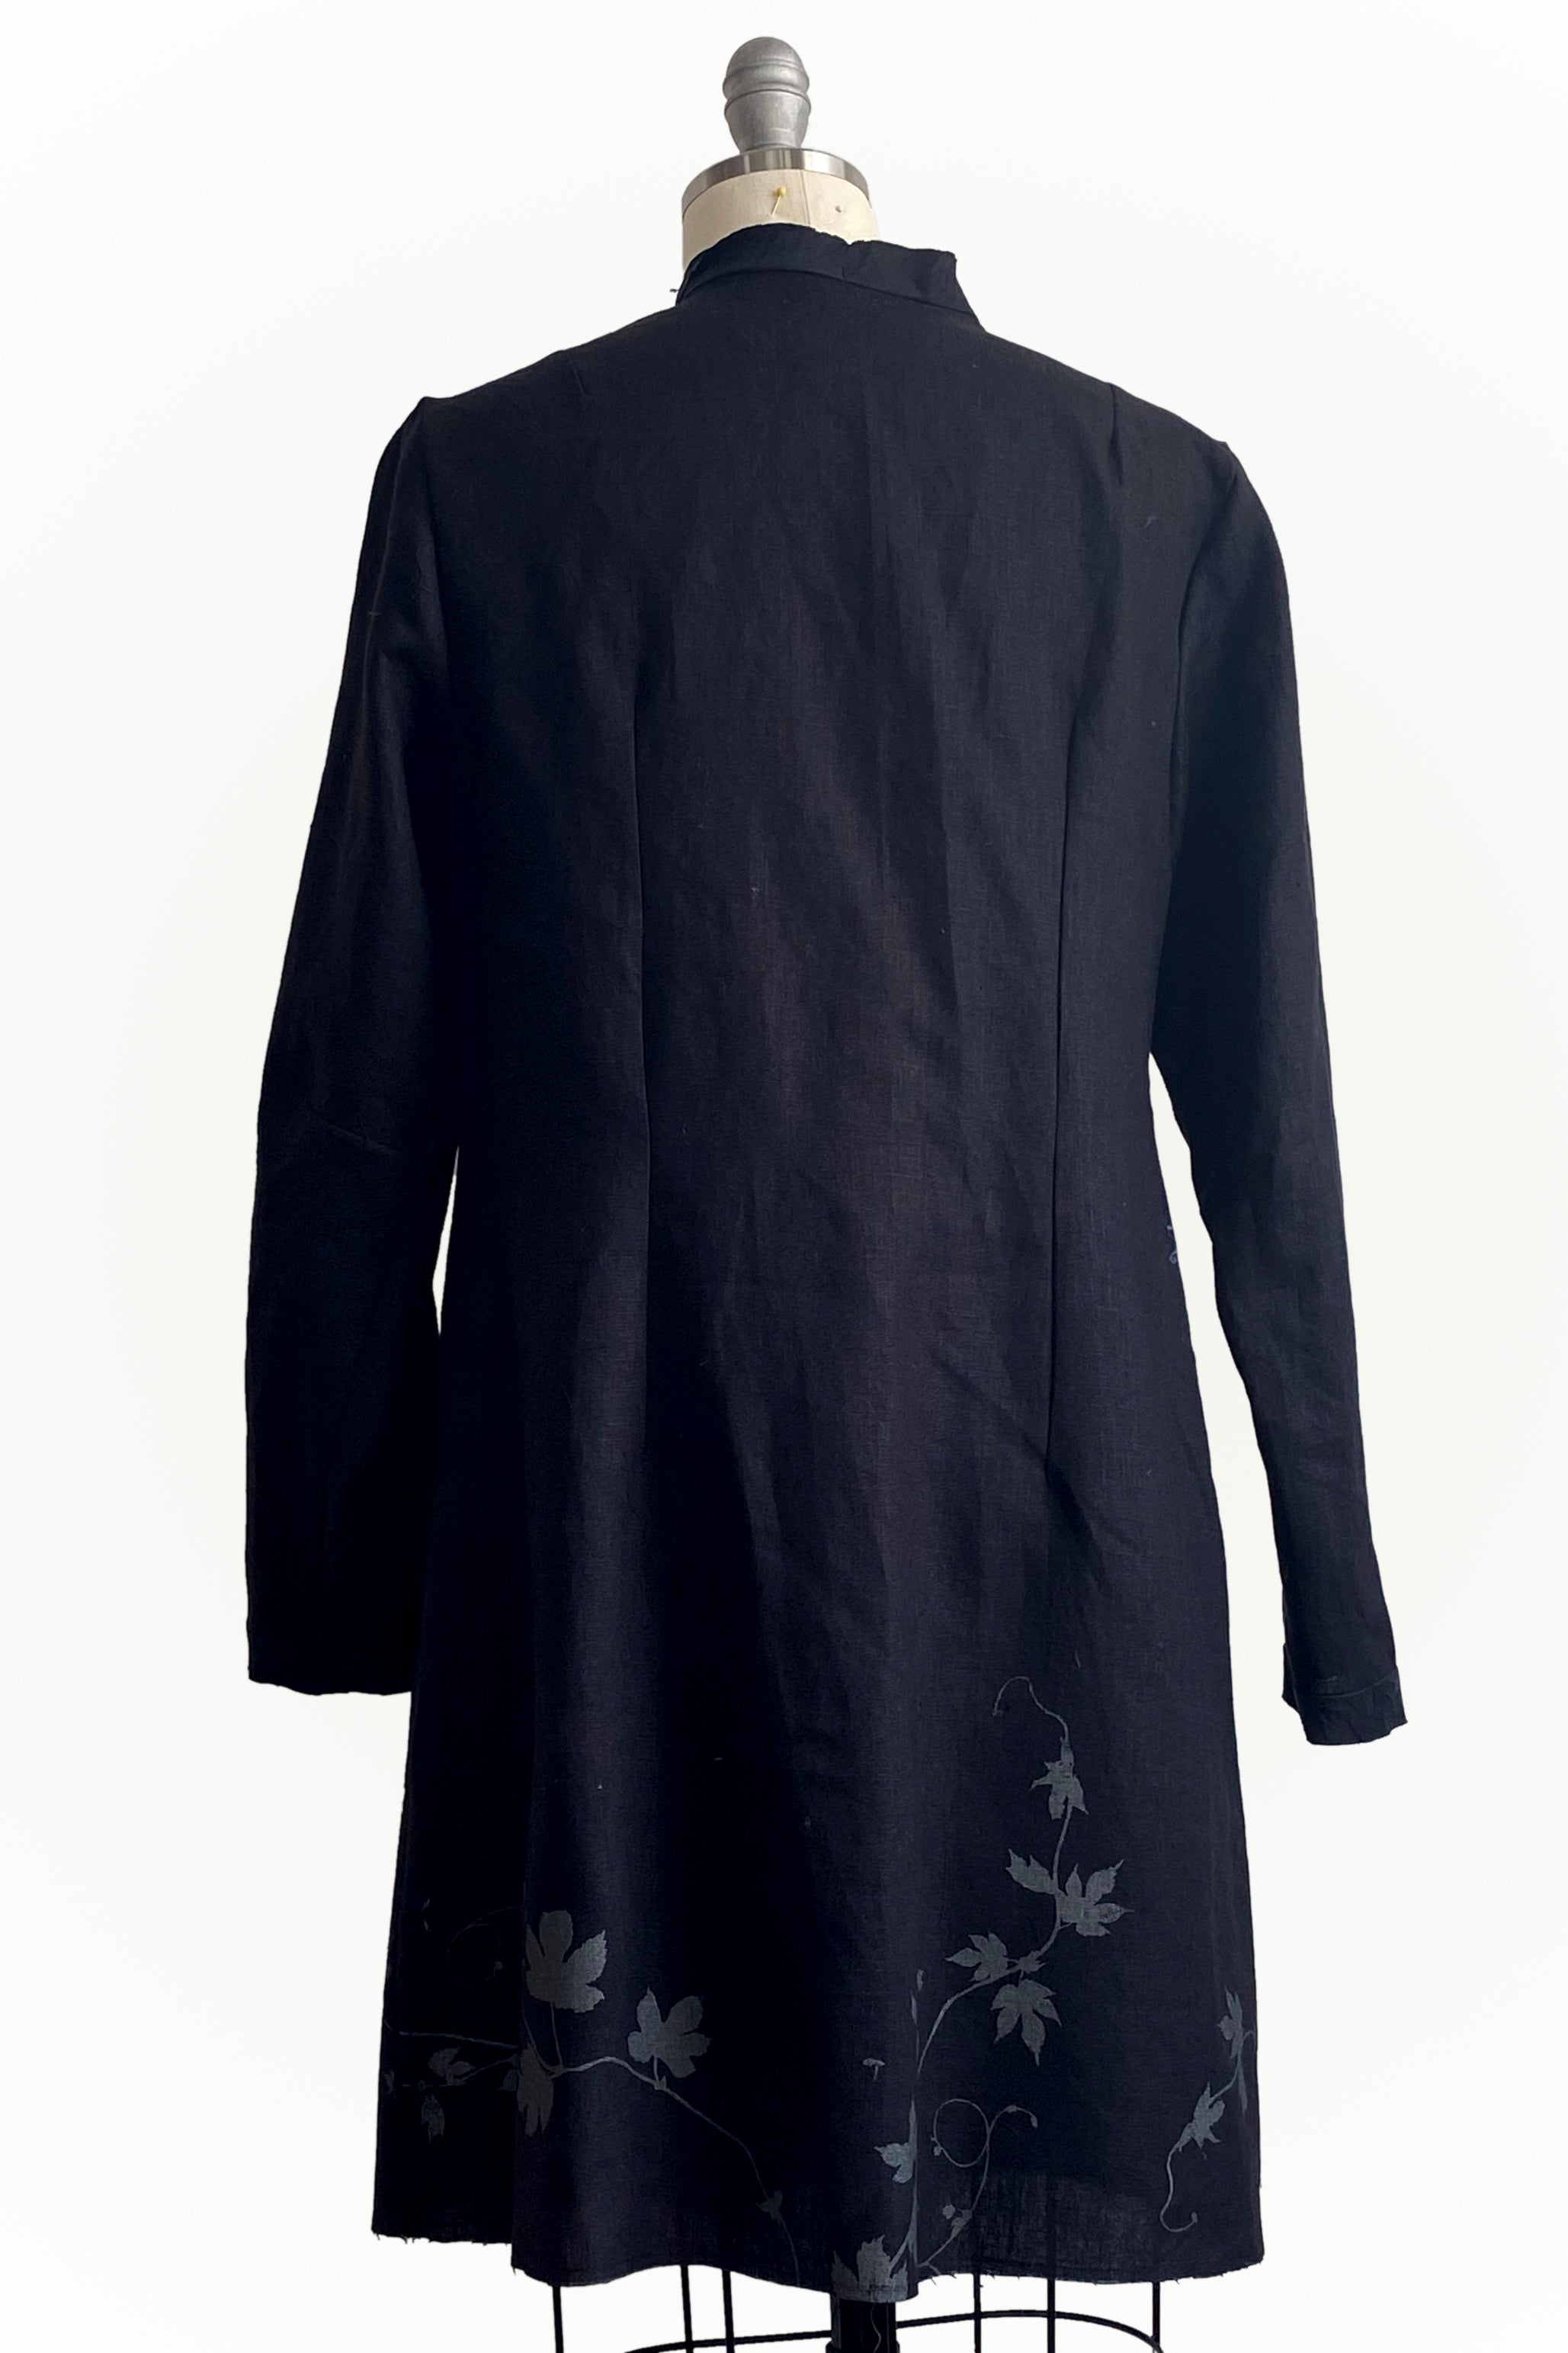 Hampton Coat Linen - Black w/ Vines Print - Medium